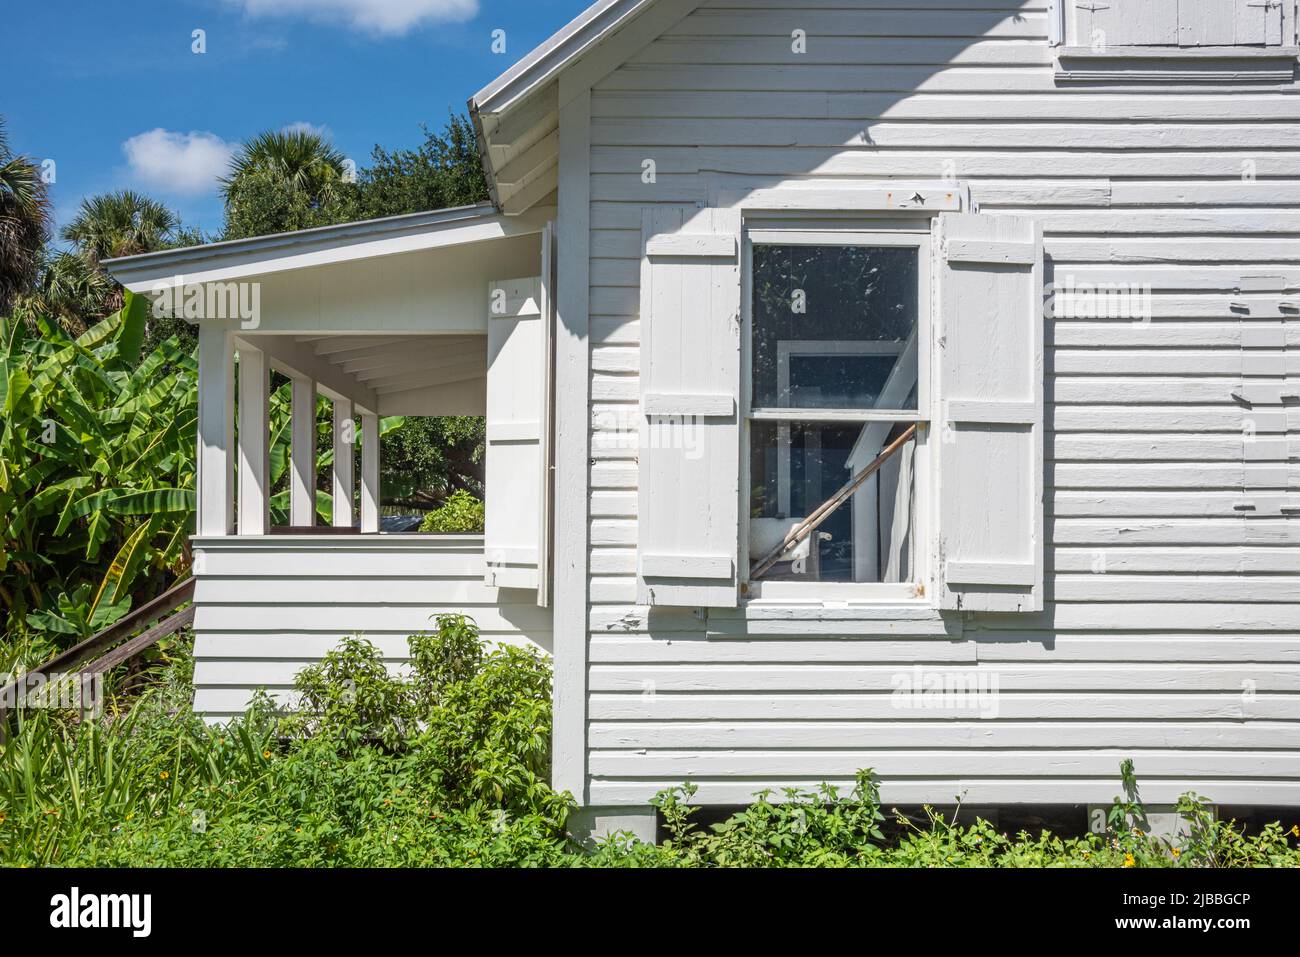 Tindall Pionier Gehöft, ein Cracker - style Haus von George Tindall 1892 erbaut und gilt als das älteste noch existierende Haus in Palm Beach County, FL. Stockfoto